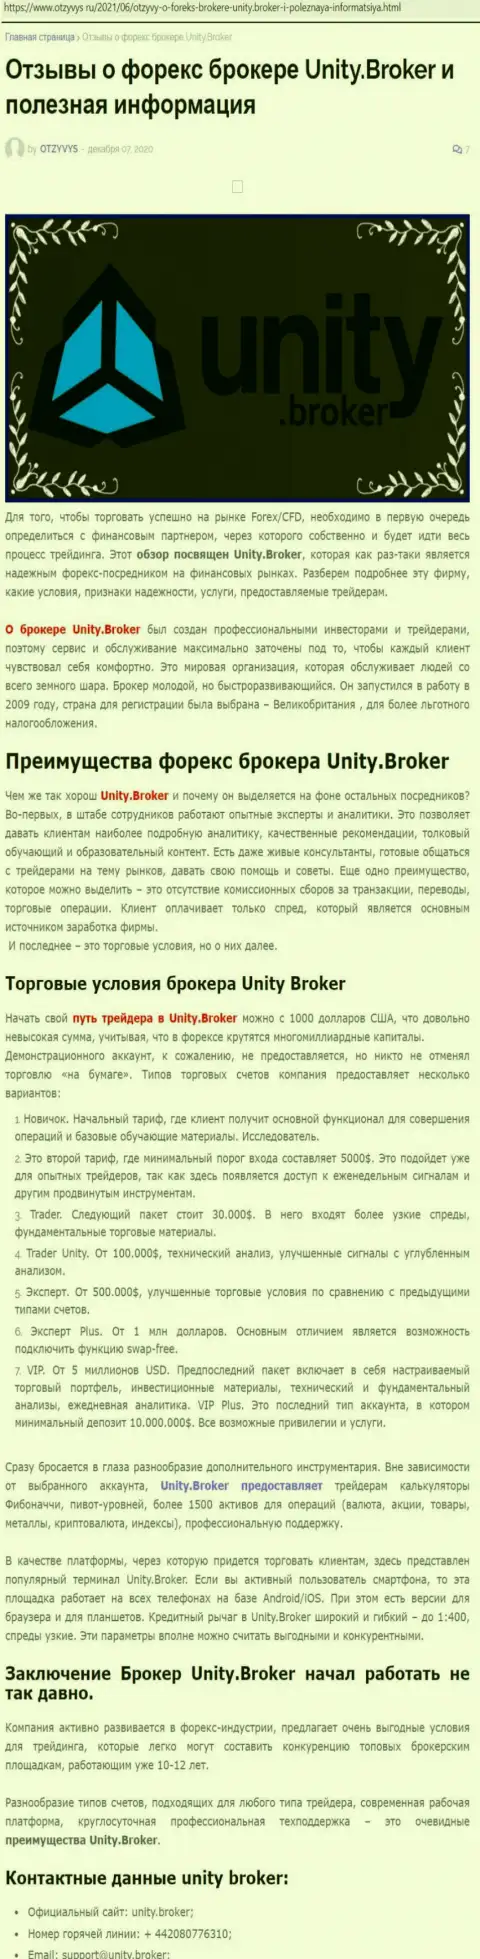 Публикация о forex-дилинговой организации Unity Broker на сайте Отзивис Ру